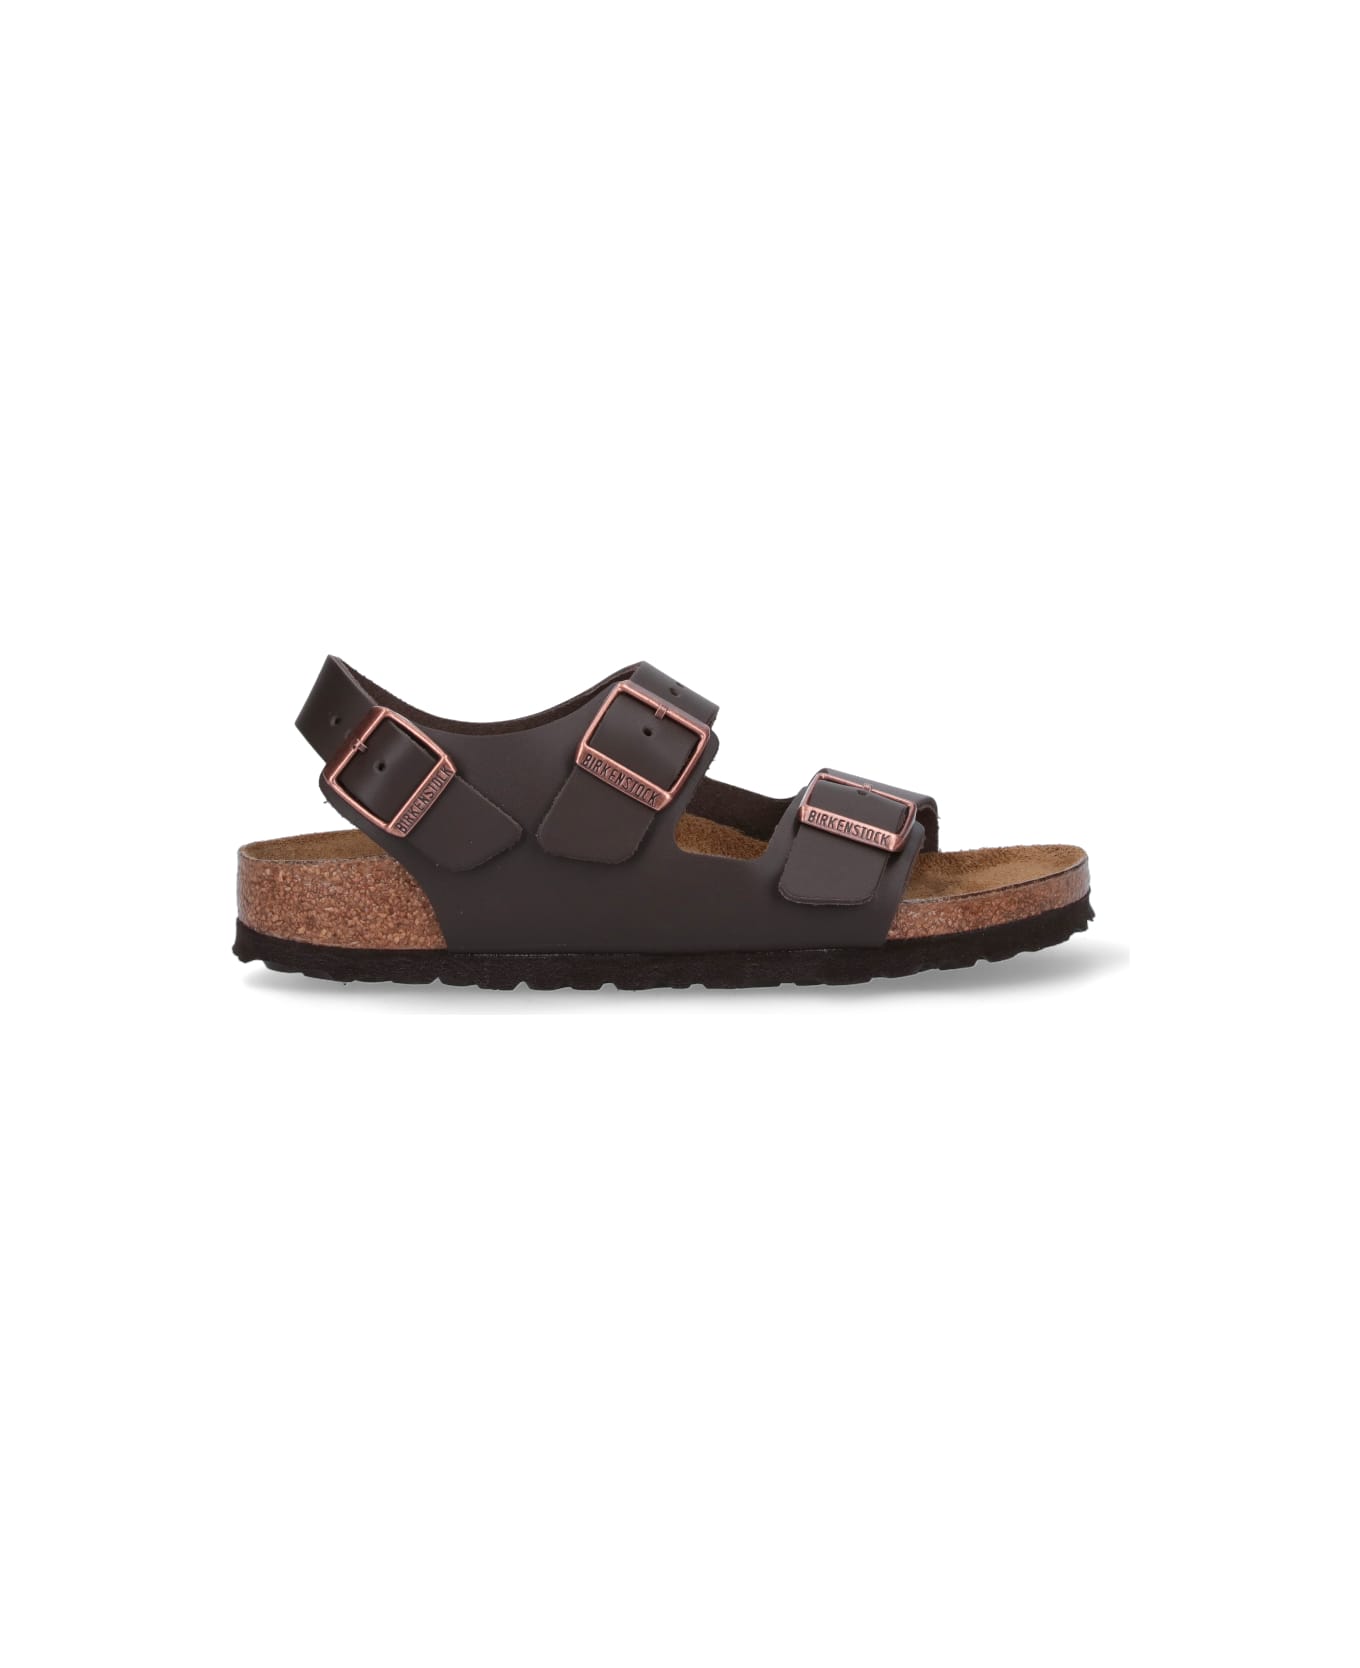 Birkenstock 'milano' Sandals - Dark brown